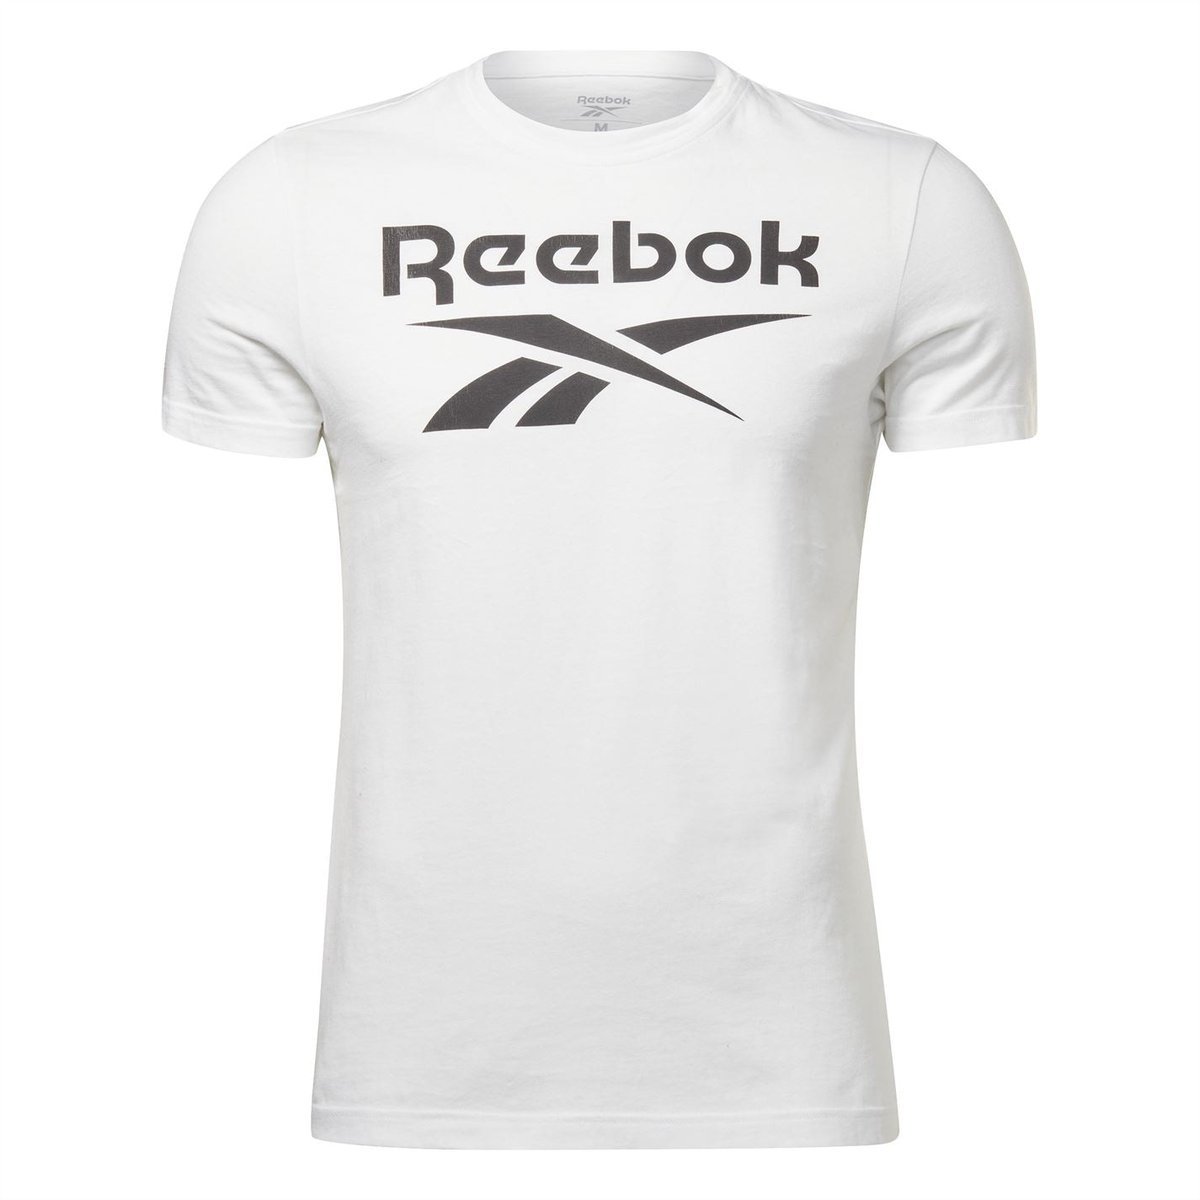 Reebok T-shirts